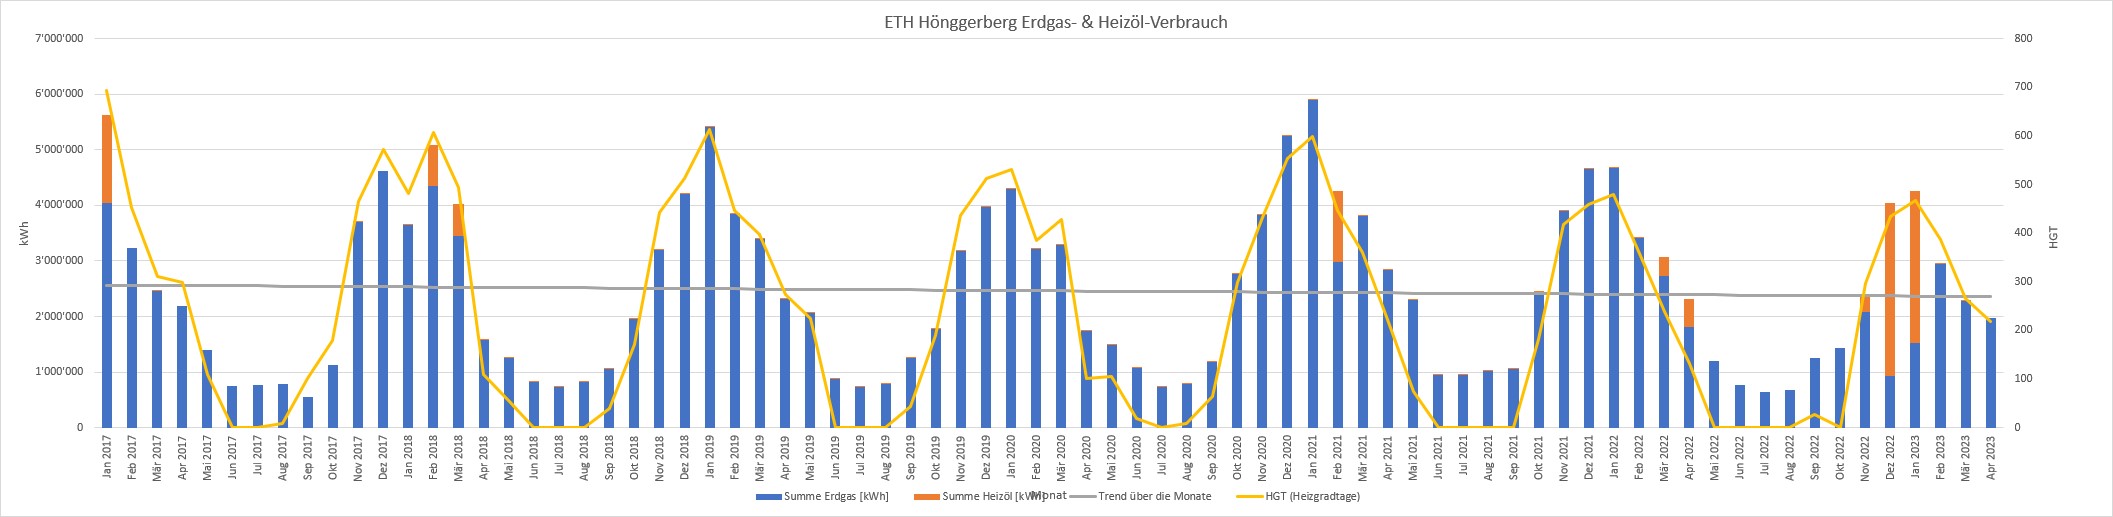 Vergr?sserte Ansicht: Grafik zum Erdgas- & Heizöl-Verbrauch für den ETH Hönggerberg